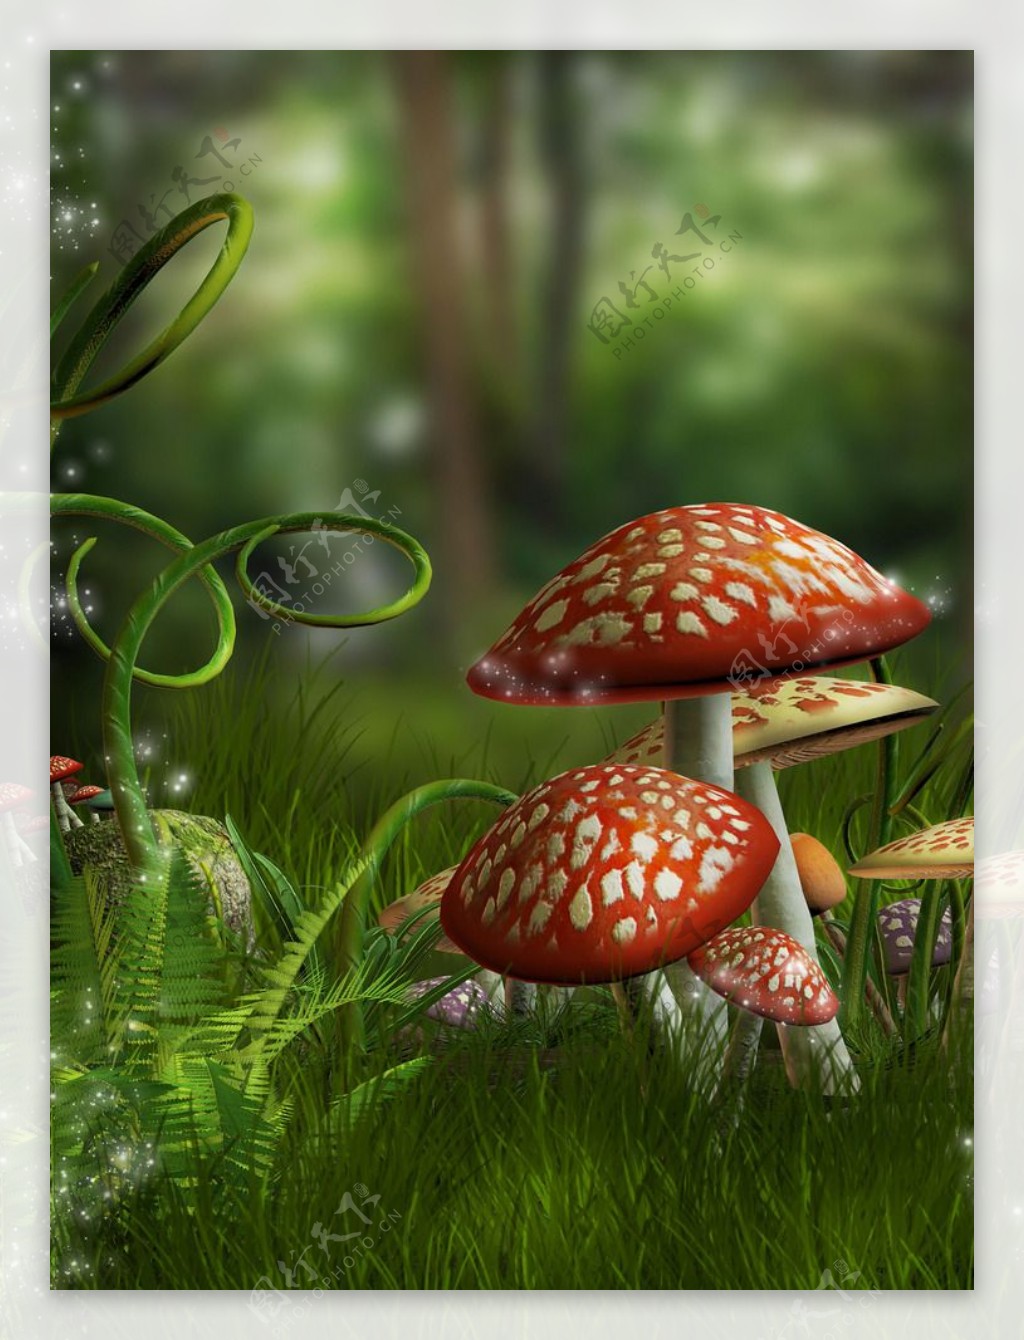 蘑菇草丛图片